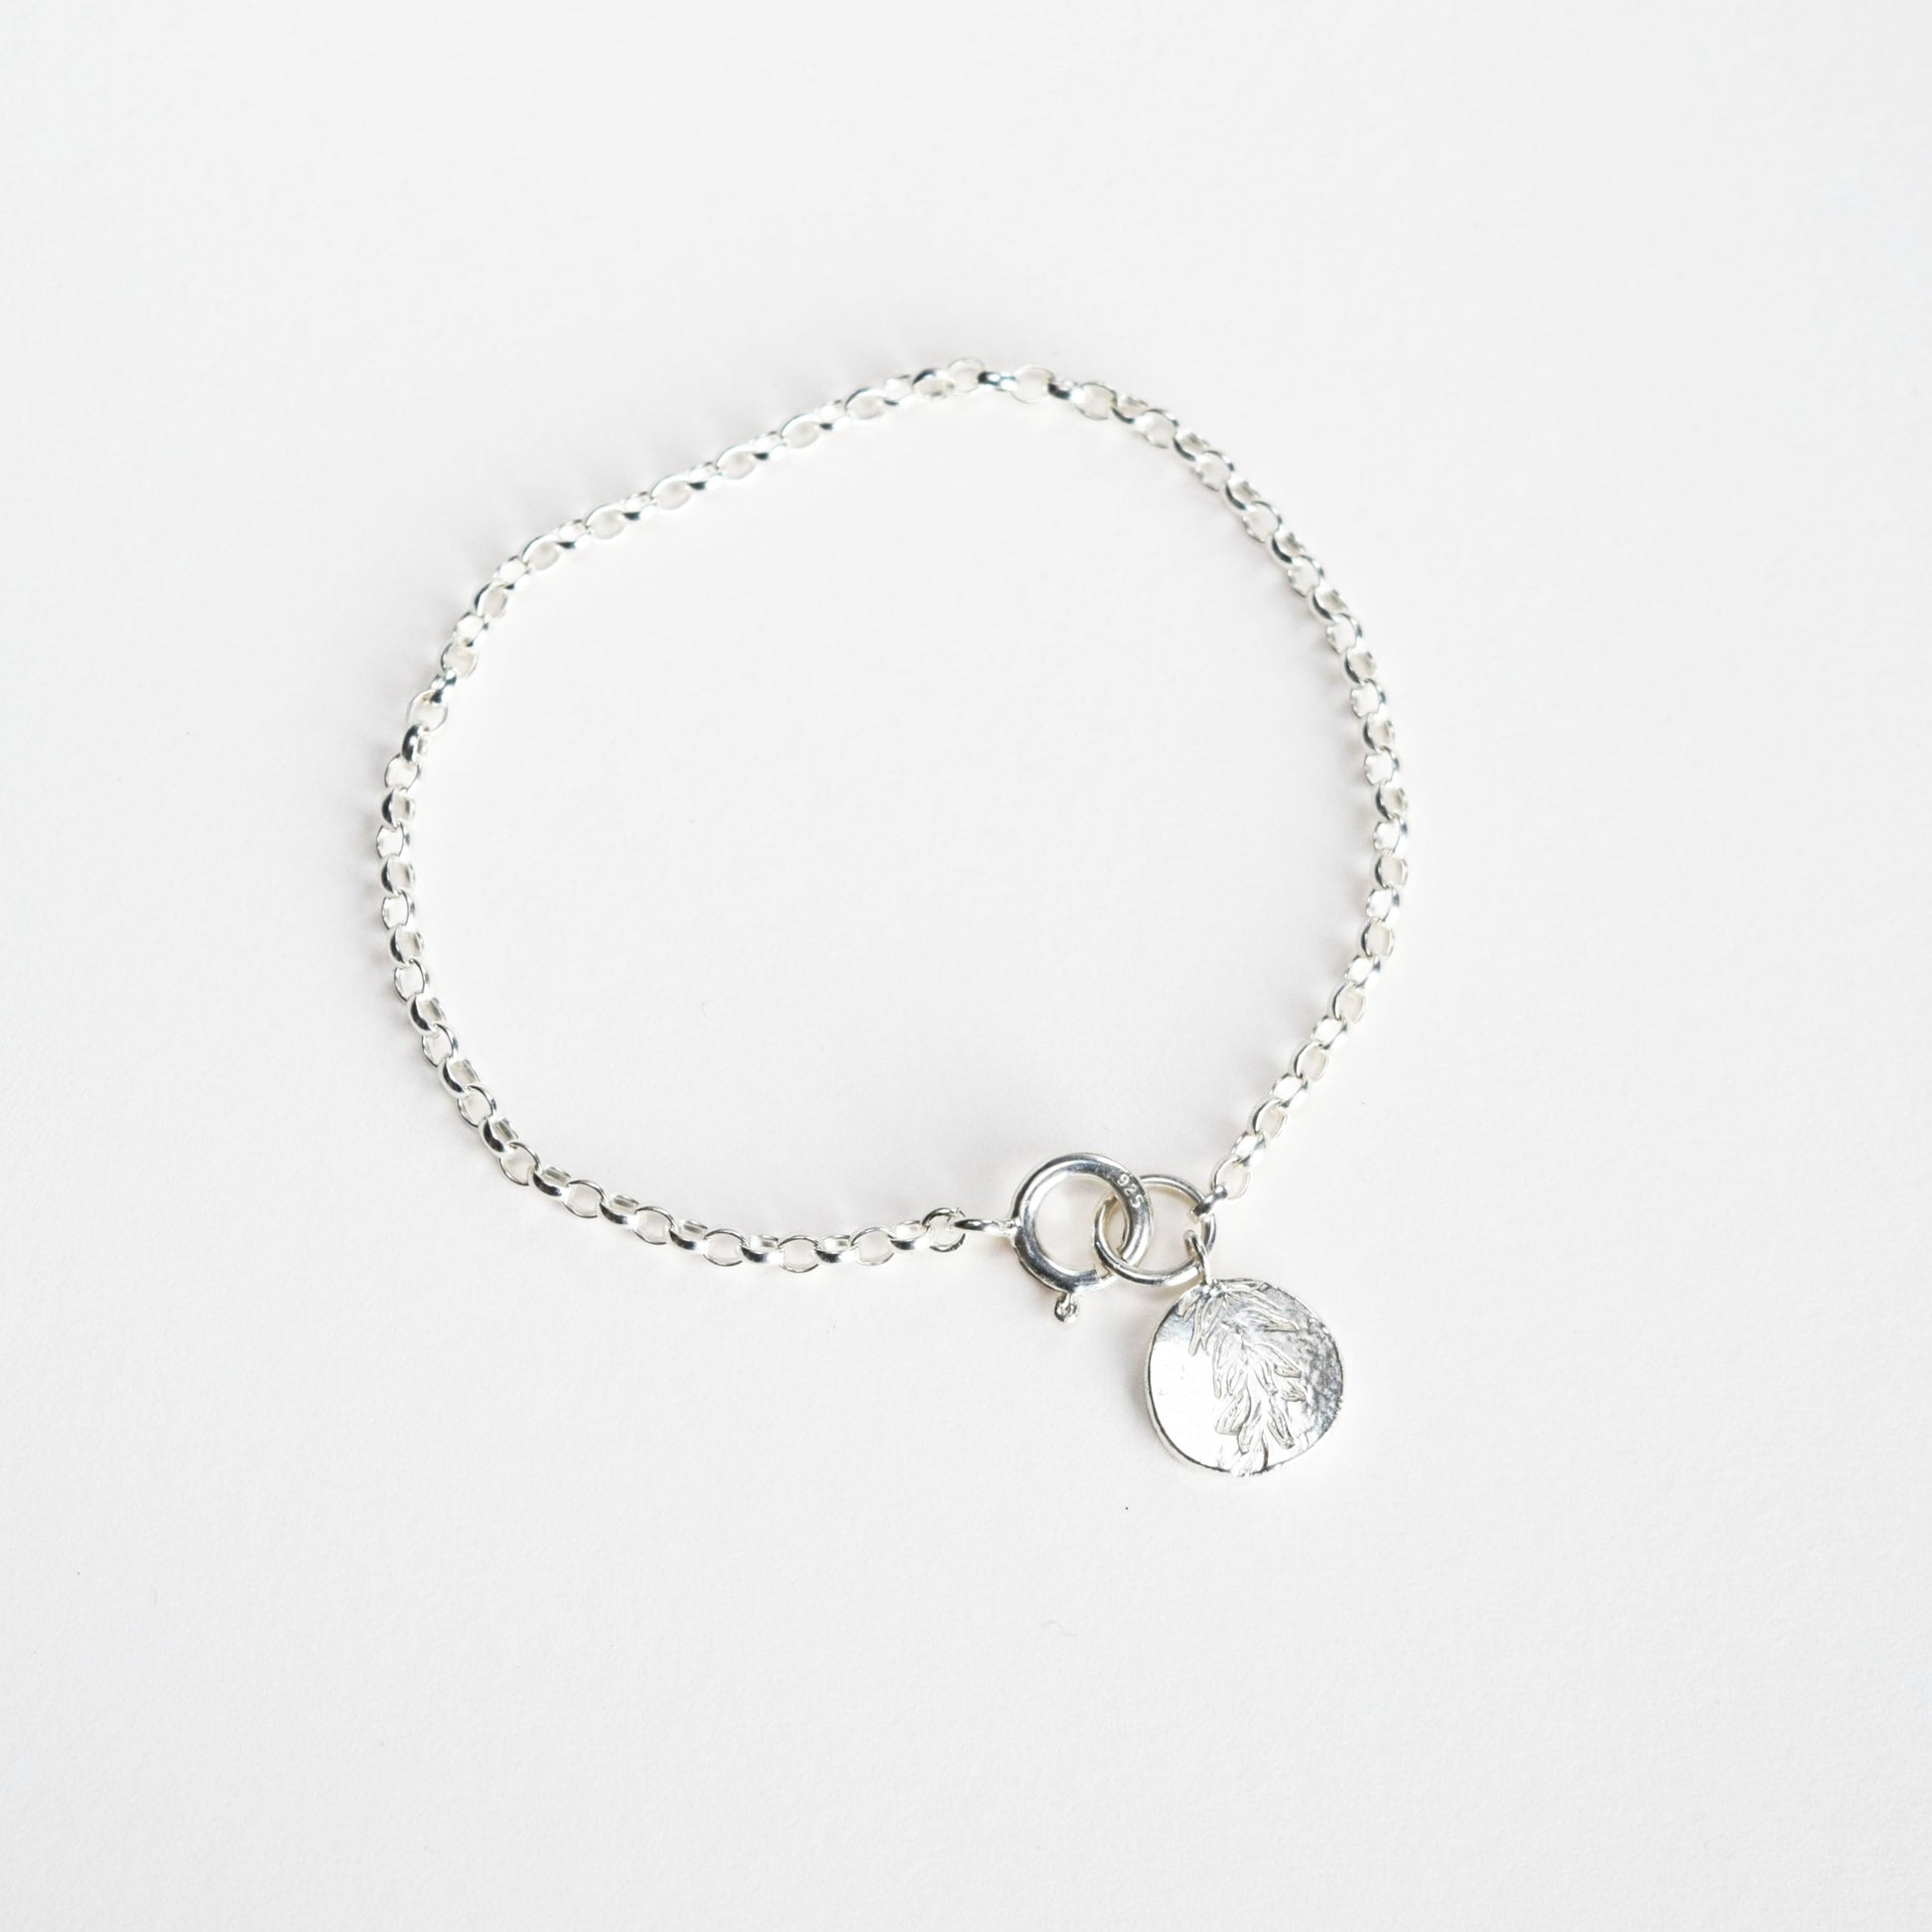 Bracelet on a white background